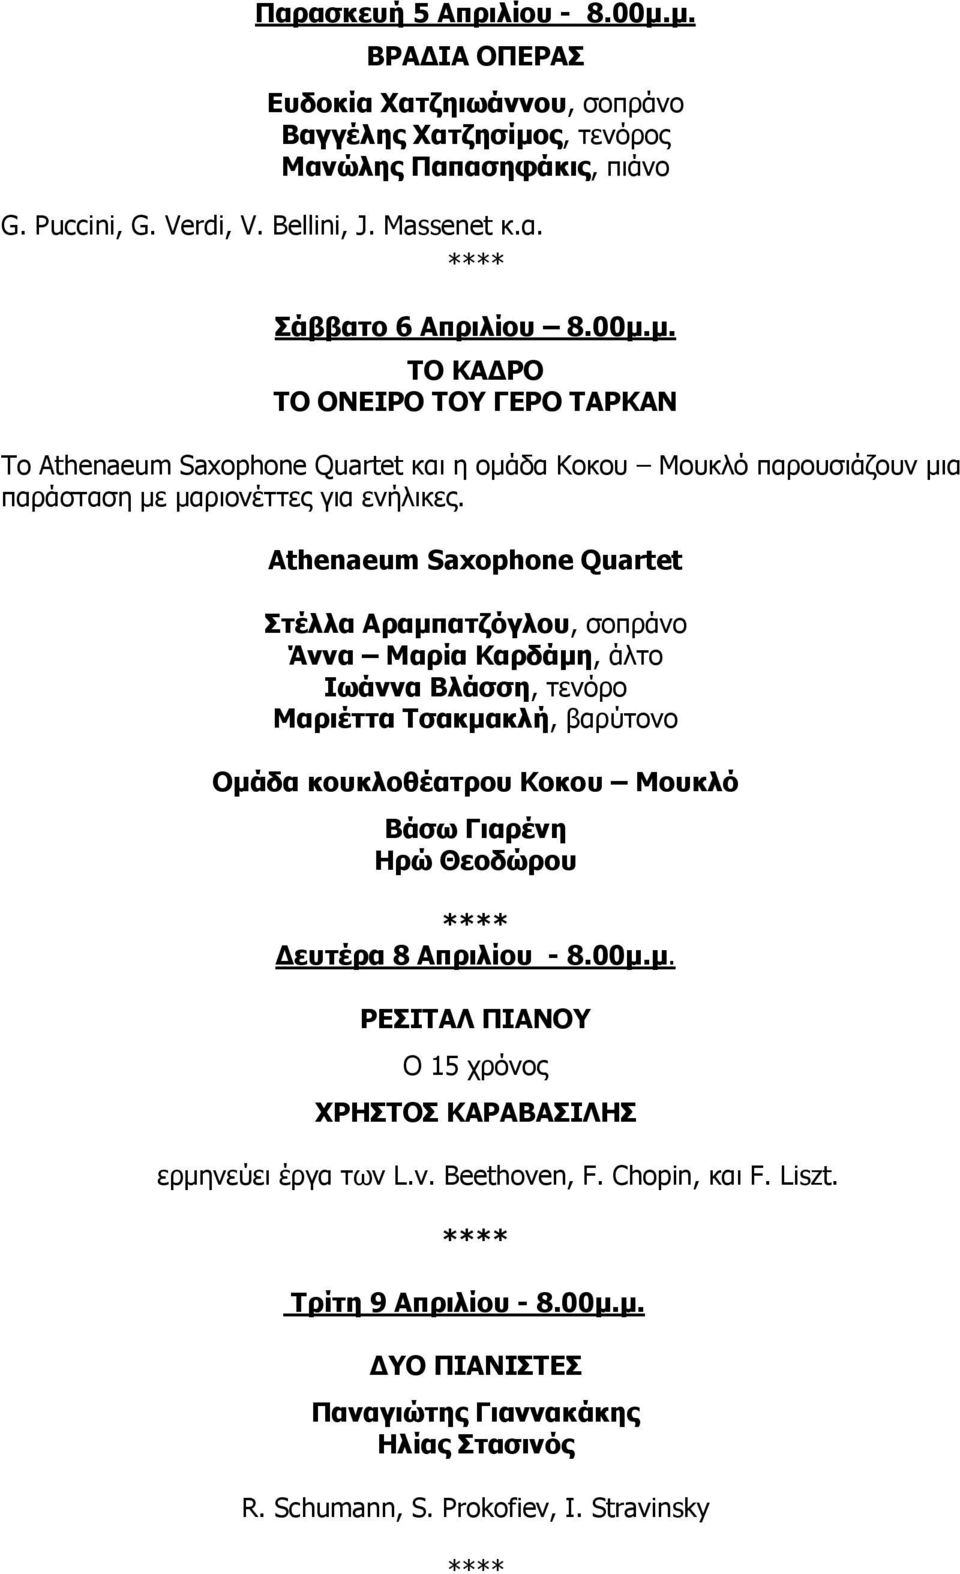 Athenaeum Saxophone Quartet Στέλλα Αραμπατζόγλου, σοπράνο Άννα Μαρία Καρδάμη, άλτο Ιωάννα Βλάσση, τενόρο Μαριέττα Τσακμακλή, βαρύτονο Ομάδα κουκλοθέατρου Κοκου Μουκλό Βάσω Γιαρένη Ηρώ Θεοδώρου